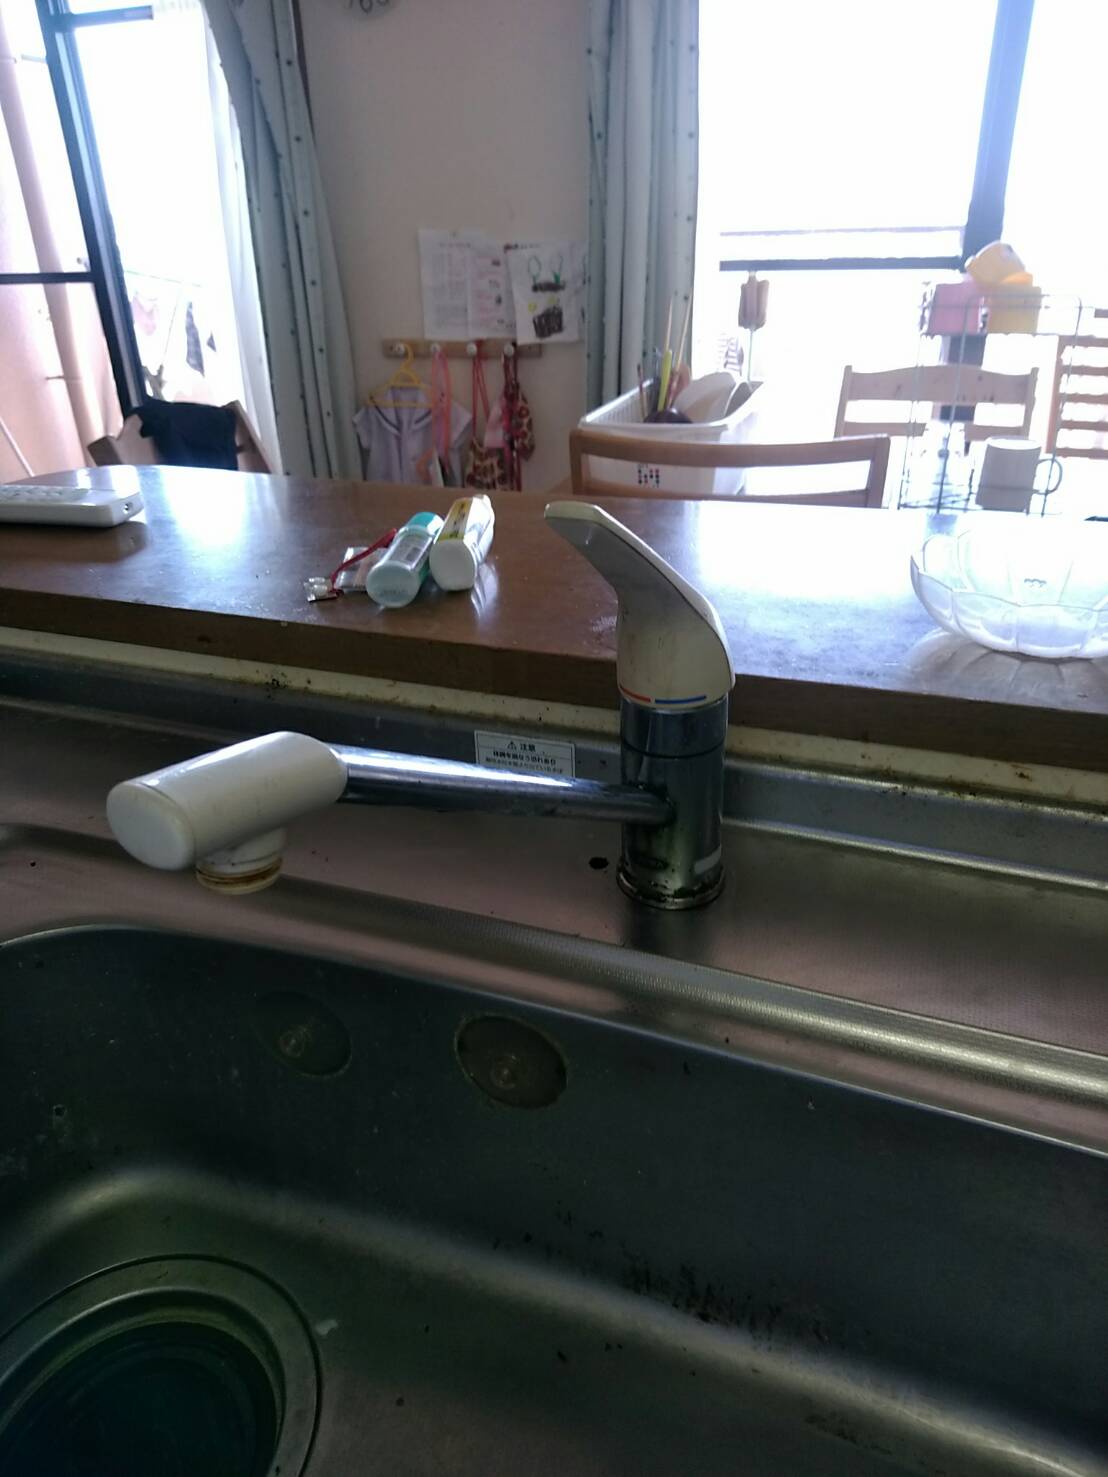 台所キッチン水道修理の ご依頼を頂きました。